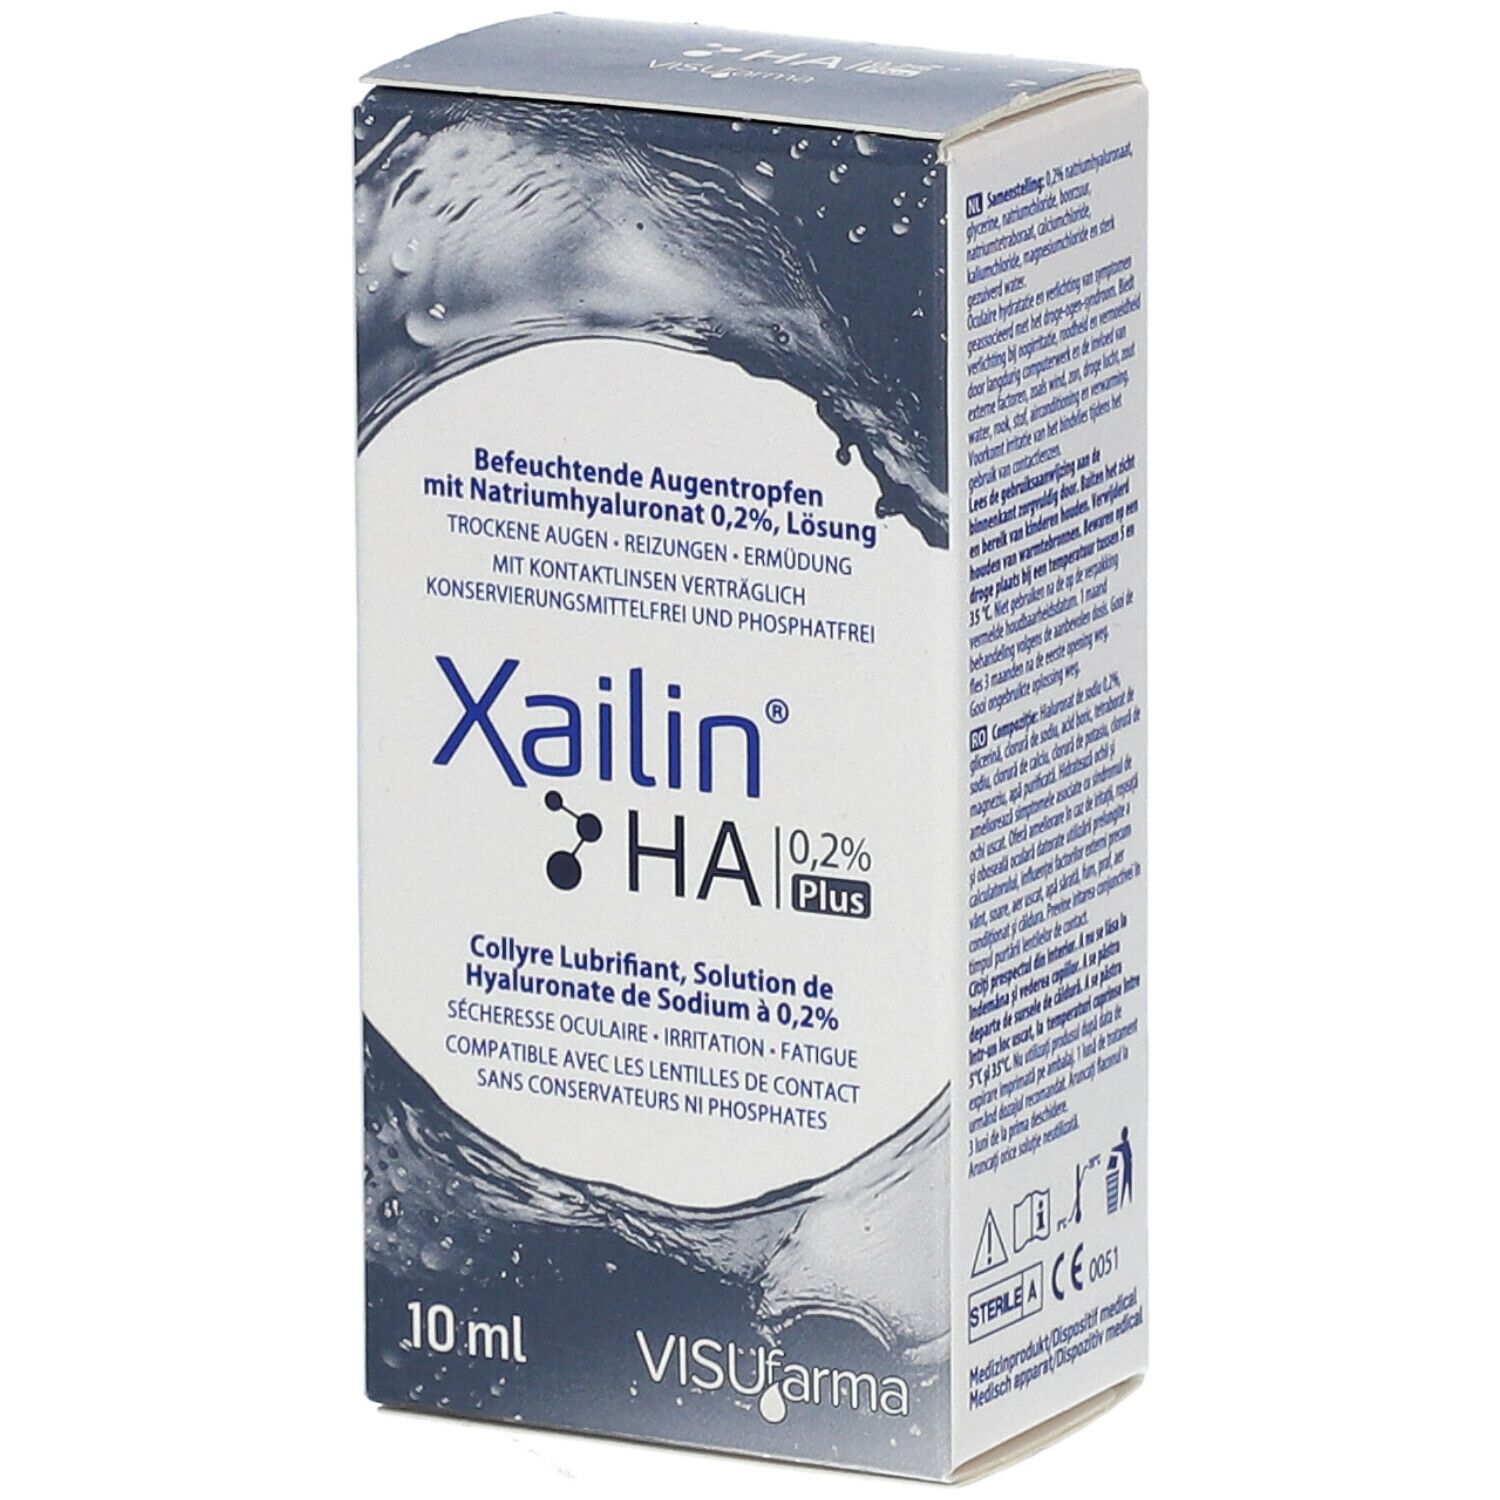 Xailin HA® 0.2 % plus eye drops